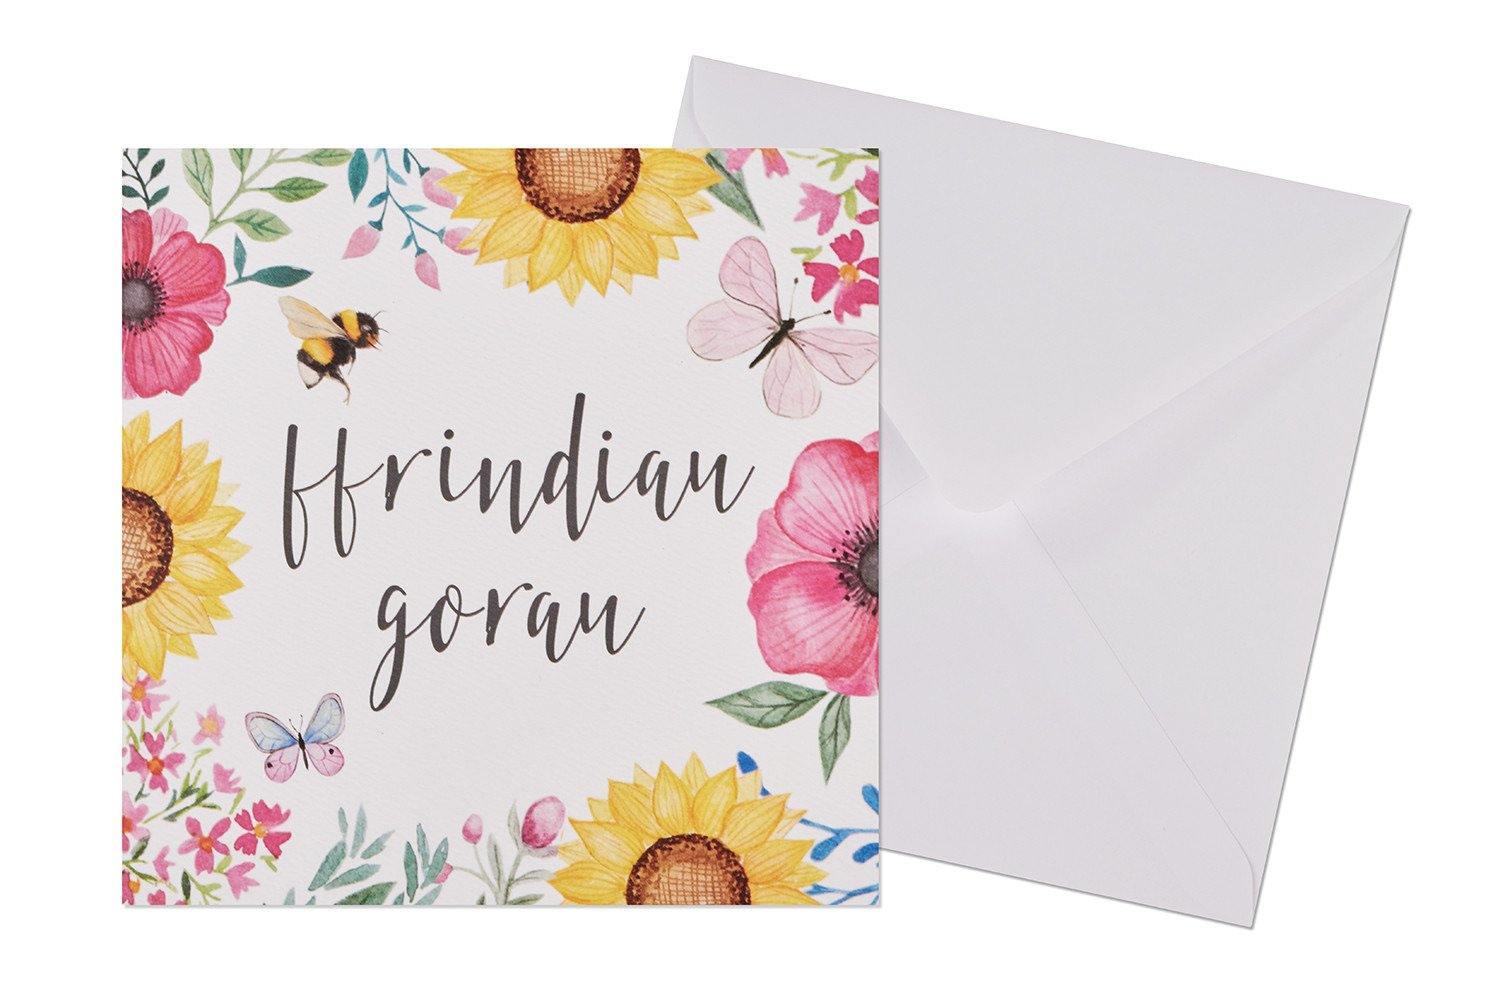 Ffrindau gorau Card - Lush and Tidy 